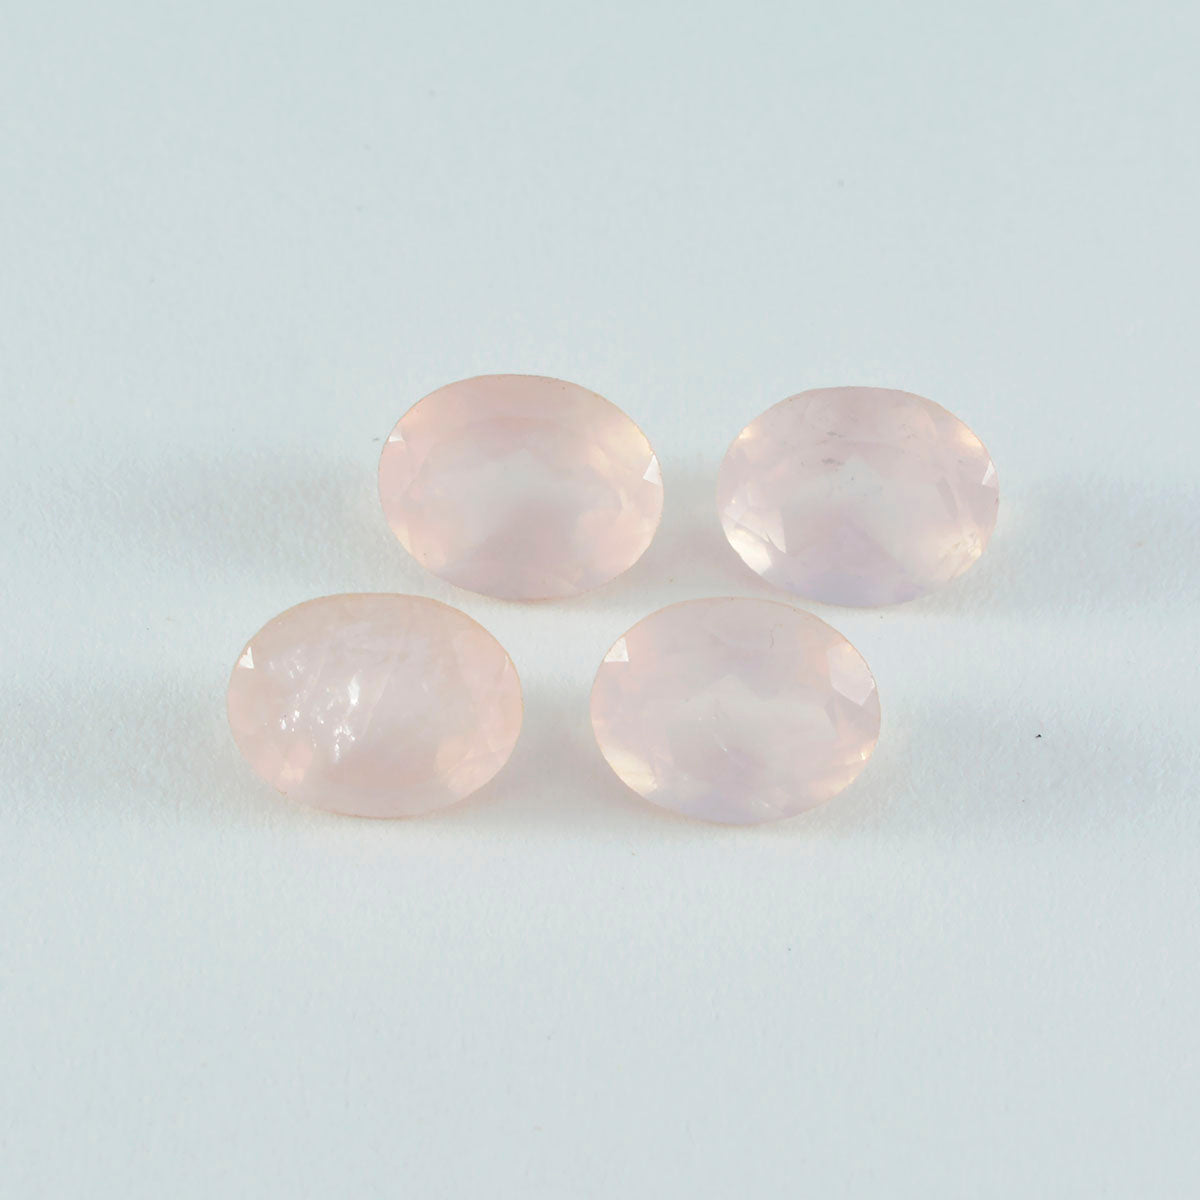 riyogems 1шт розовый кварц ограненный 10x12 мм овальная форма отличное качество россыпь драгоценных камней